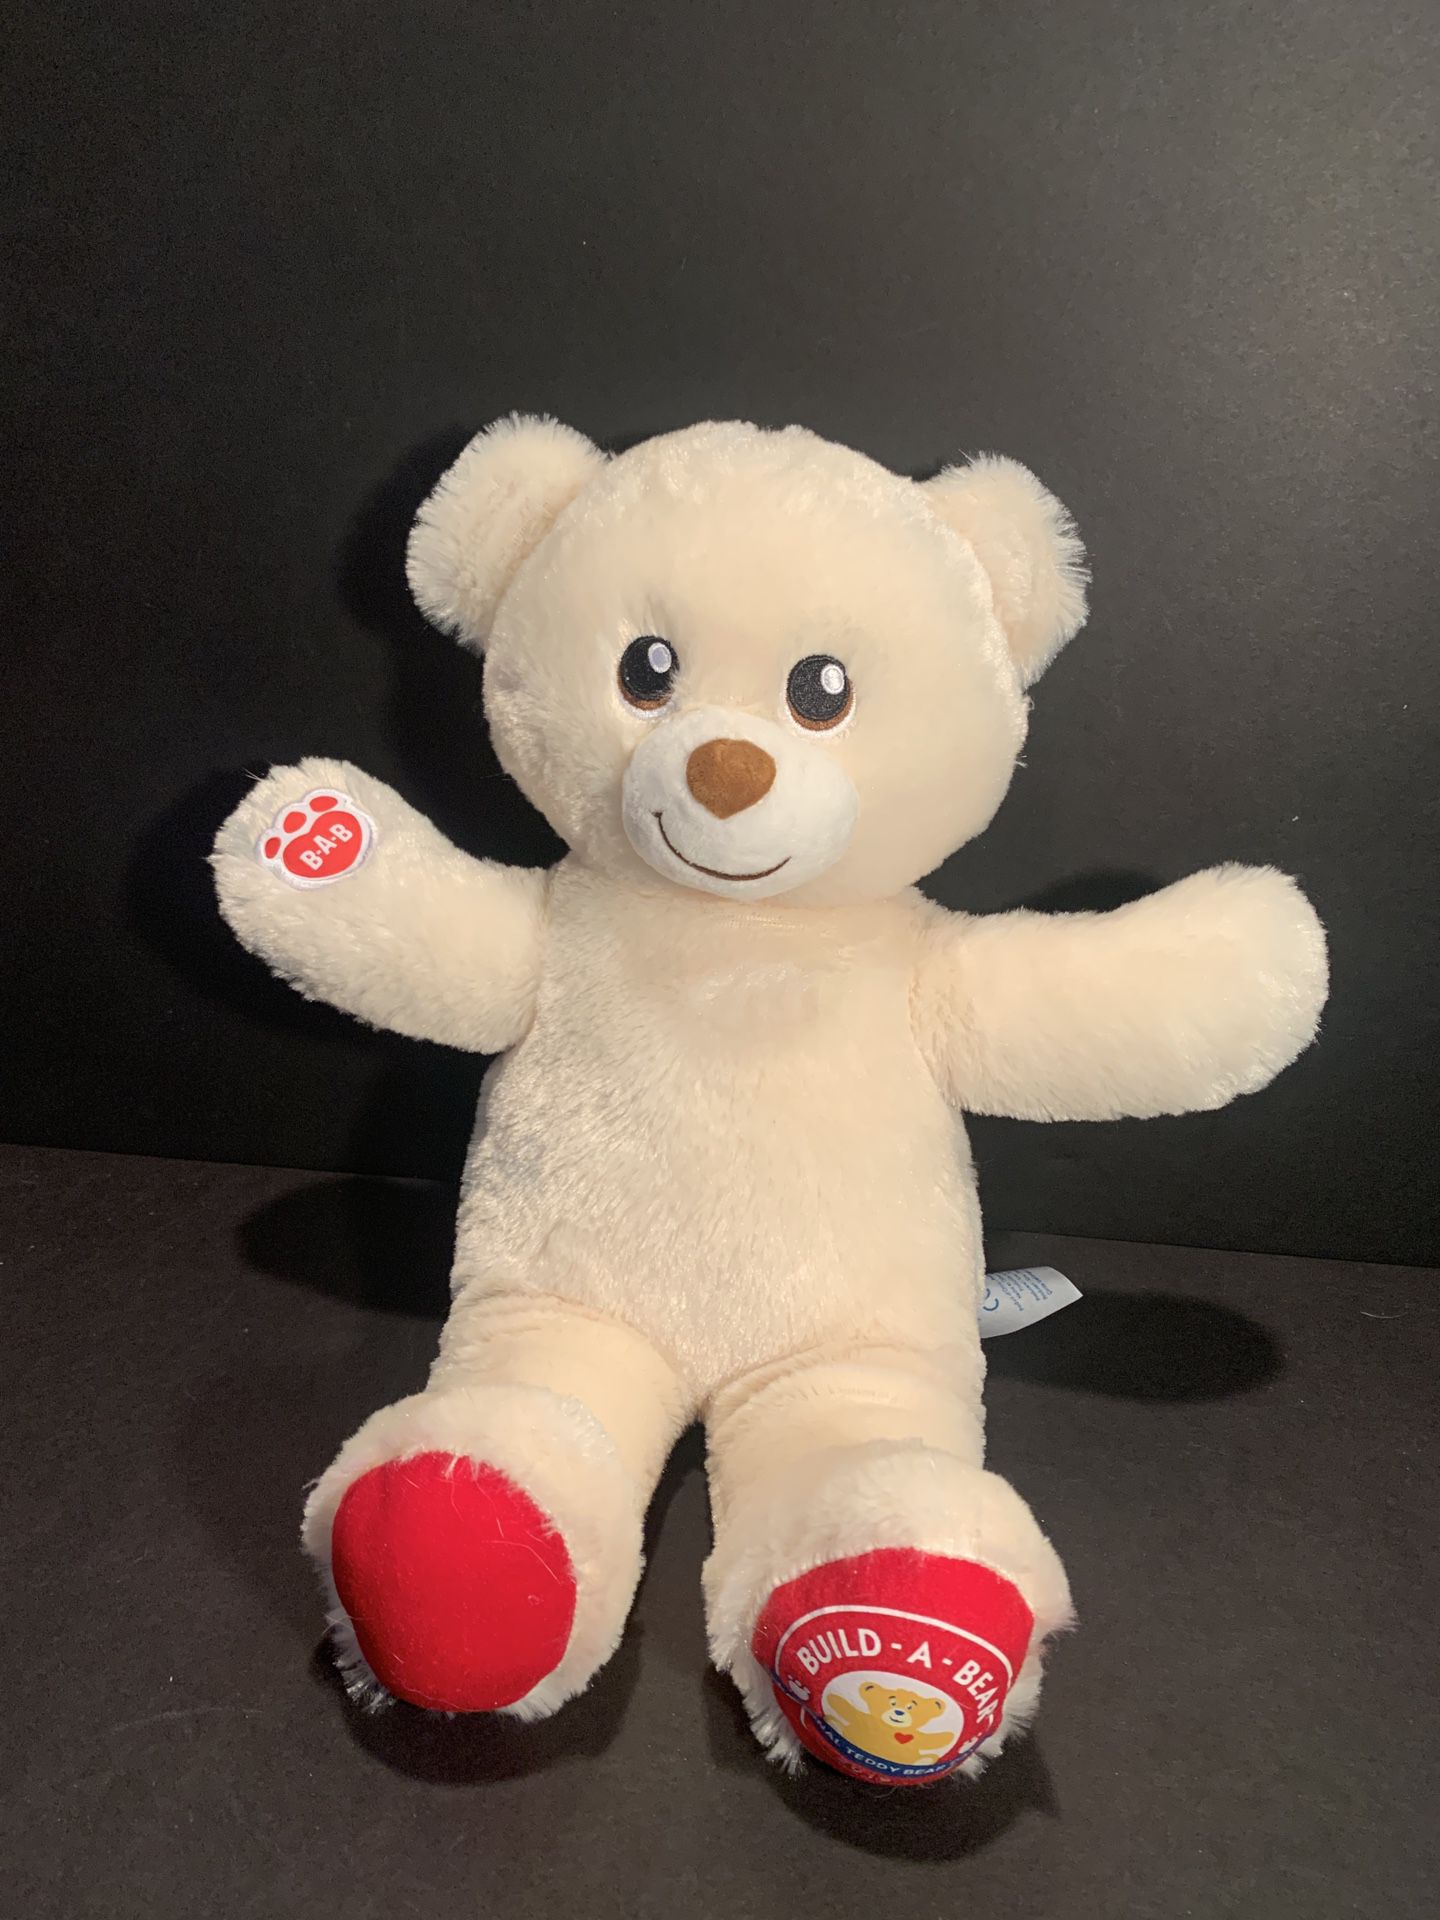 Build A Bear Limited Edition National Teddy Bear Day 2019 Plush